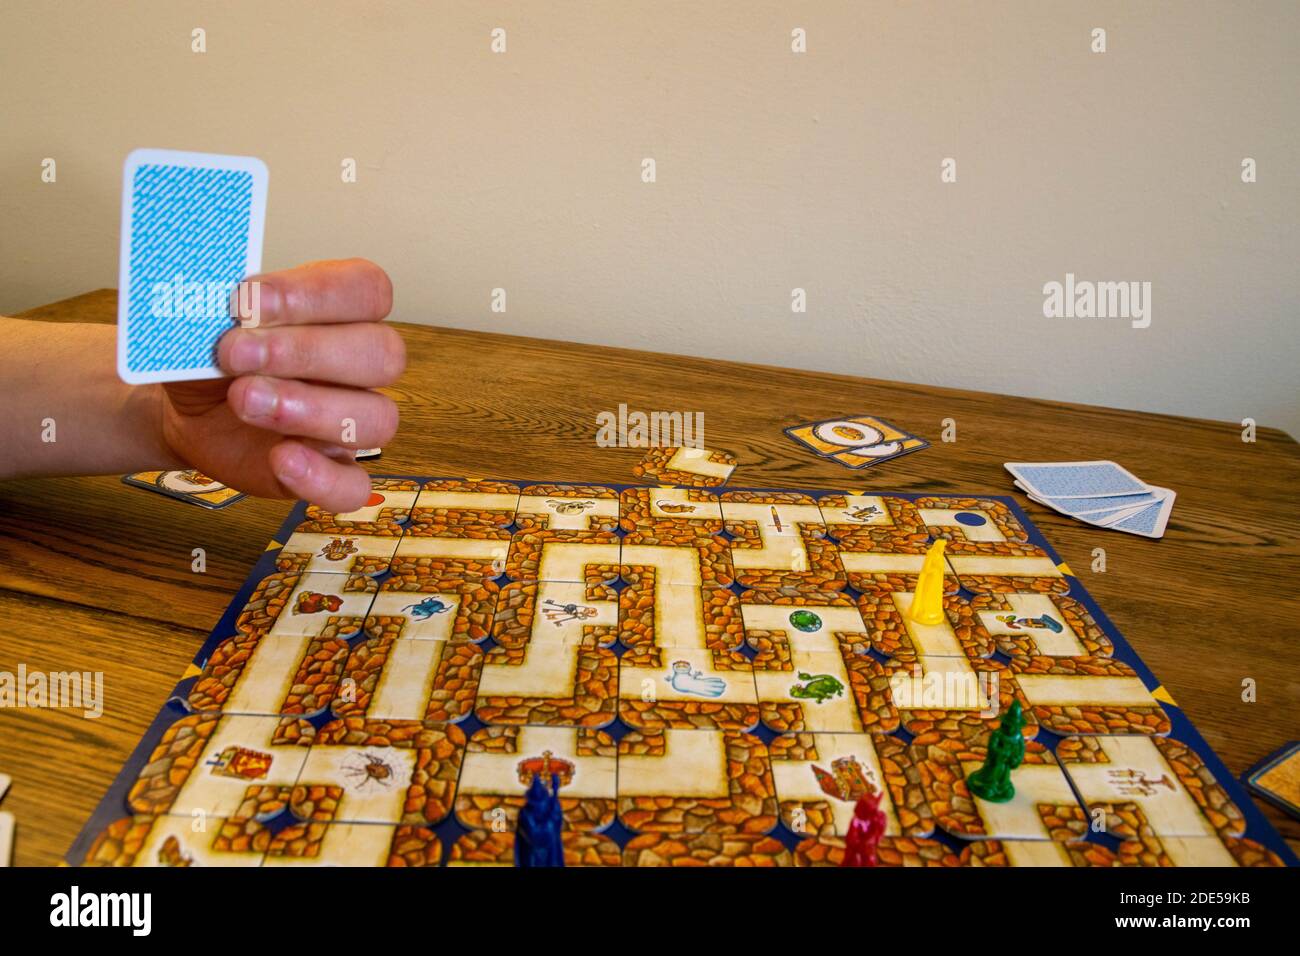 Durham, Royaume-Uni - 23 avril 2020 : jeu de table labyrinthe. Les joueurs se tournent vers le labyrinthe pour rechercher leurs objets magiques et leurs personnages par Mov soigneusement Banque D'Images